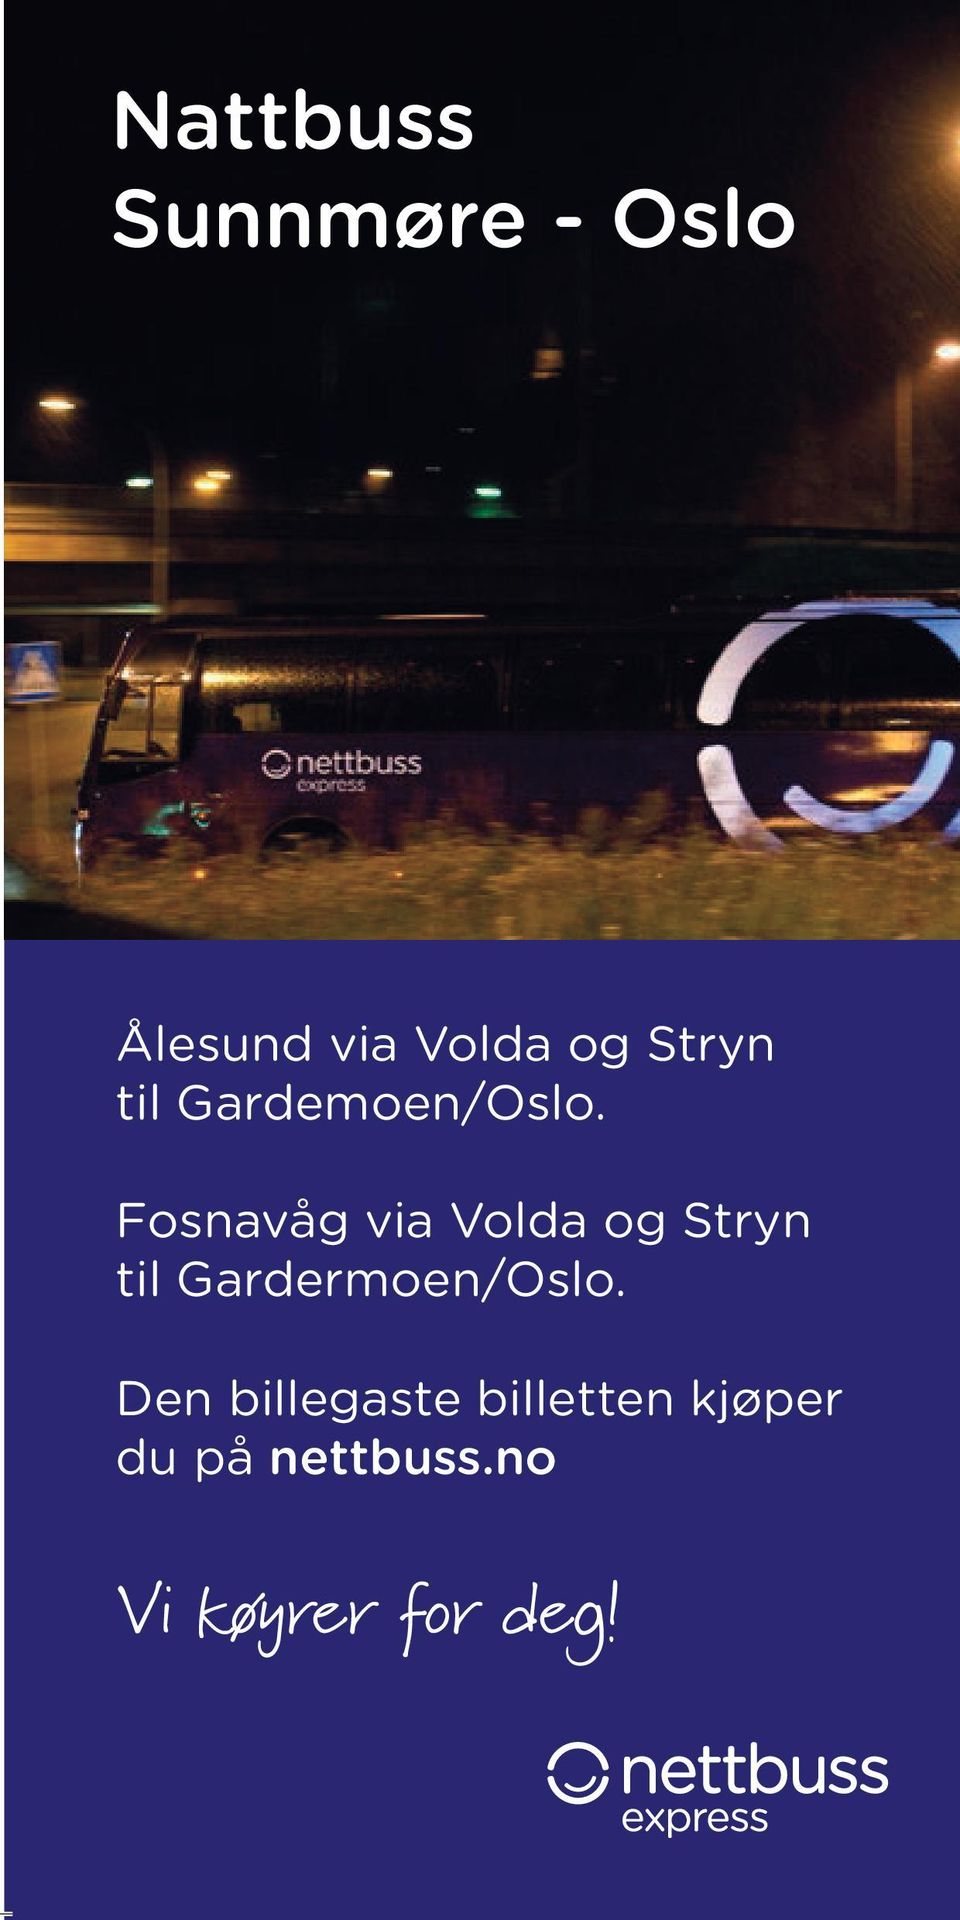 Fosnavåg via Volda og Stryn til Gardermoen/Oslo.